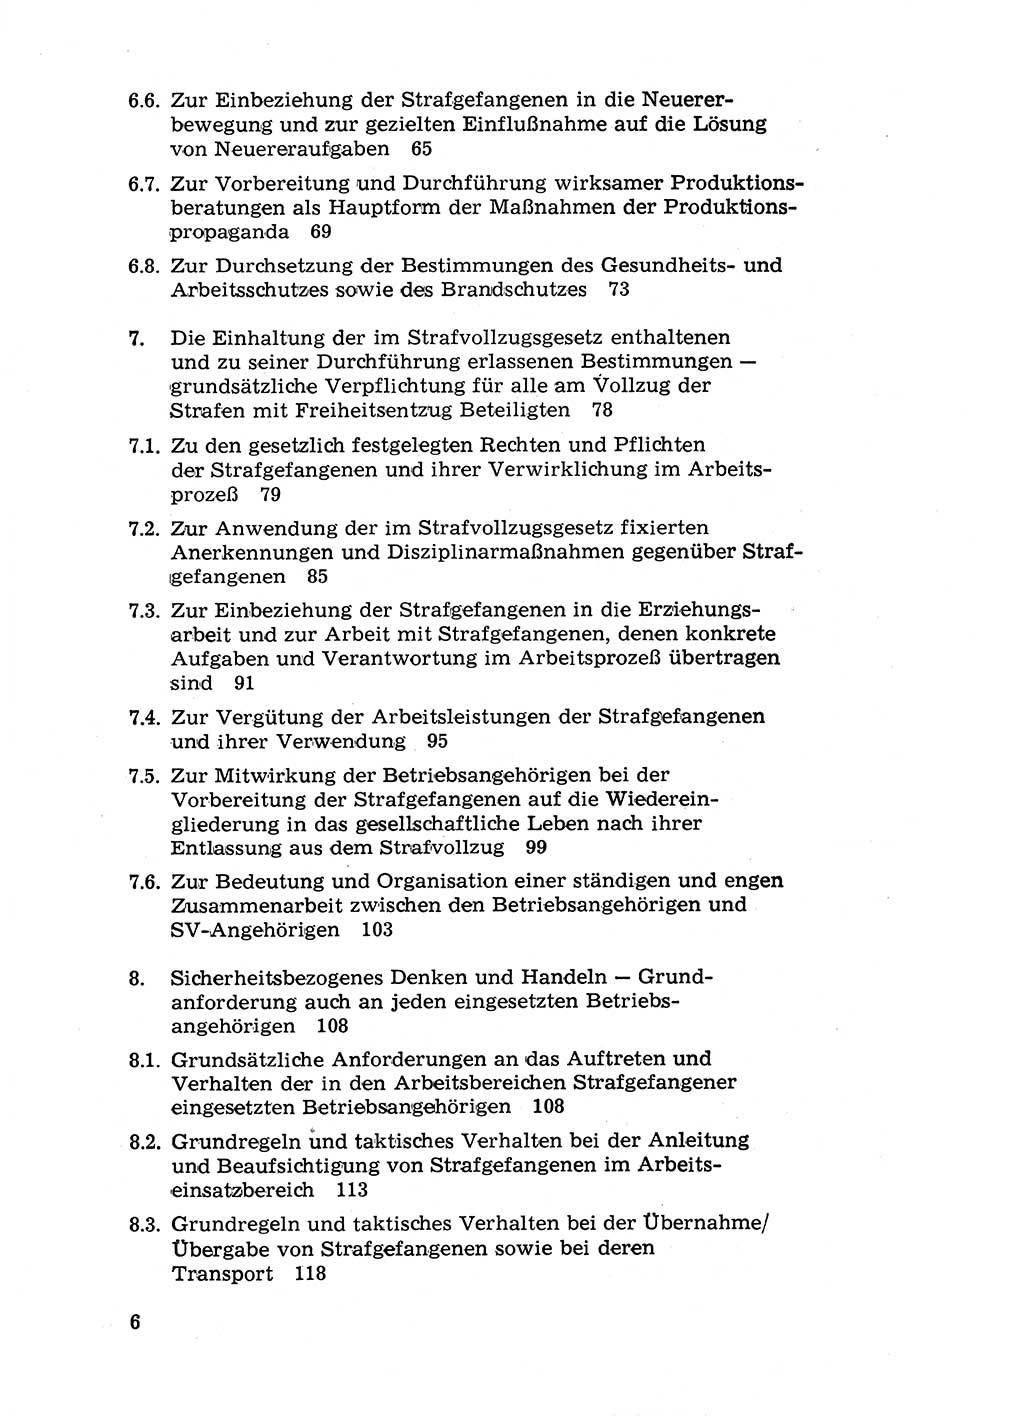 Handbuch für Betriebsangehörige, Abteilung Strafvollzug (SV) [Ministerium des Innern (MdI) Deutsche Demokratische Republik (DDR)] 1981, Seite 6 (Hb. BA Abt. SV MdI DDR 1981, S. 6)